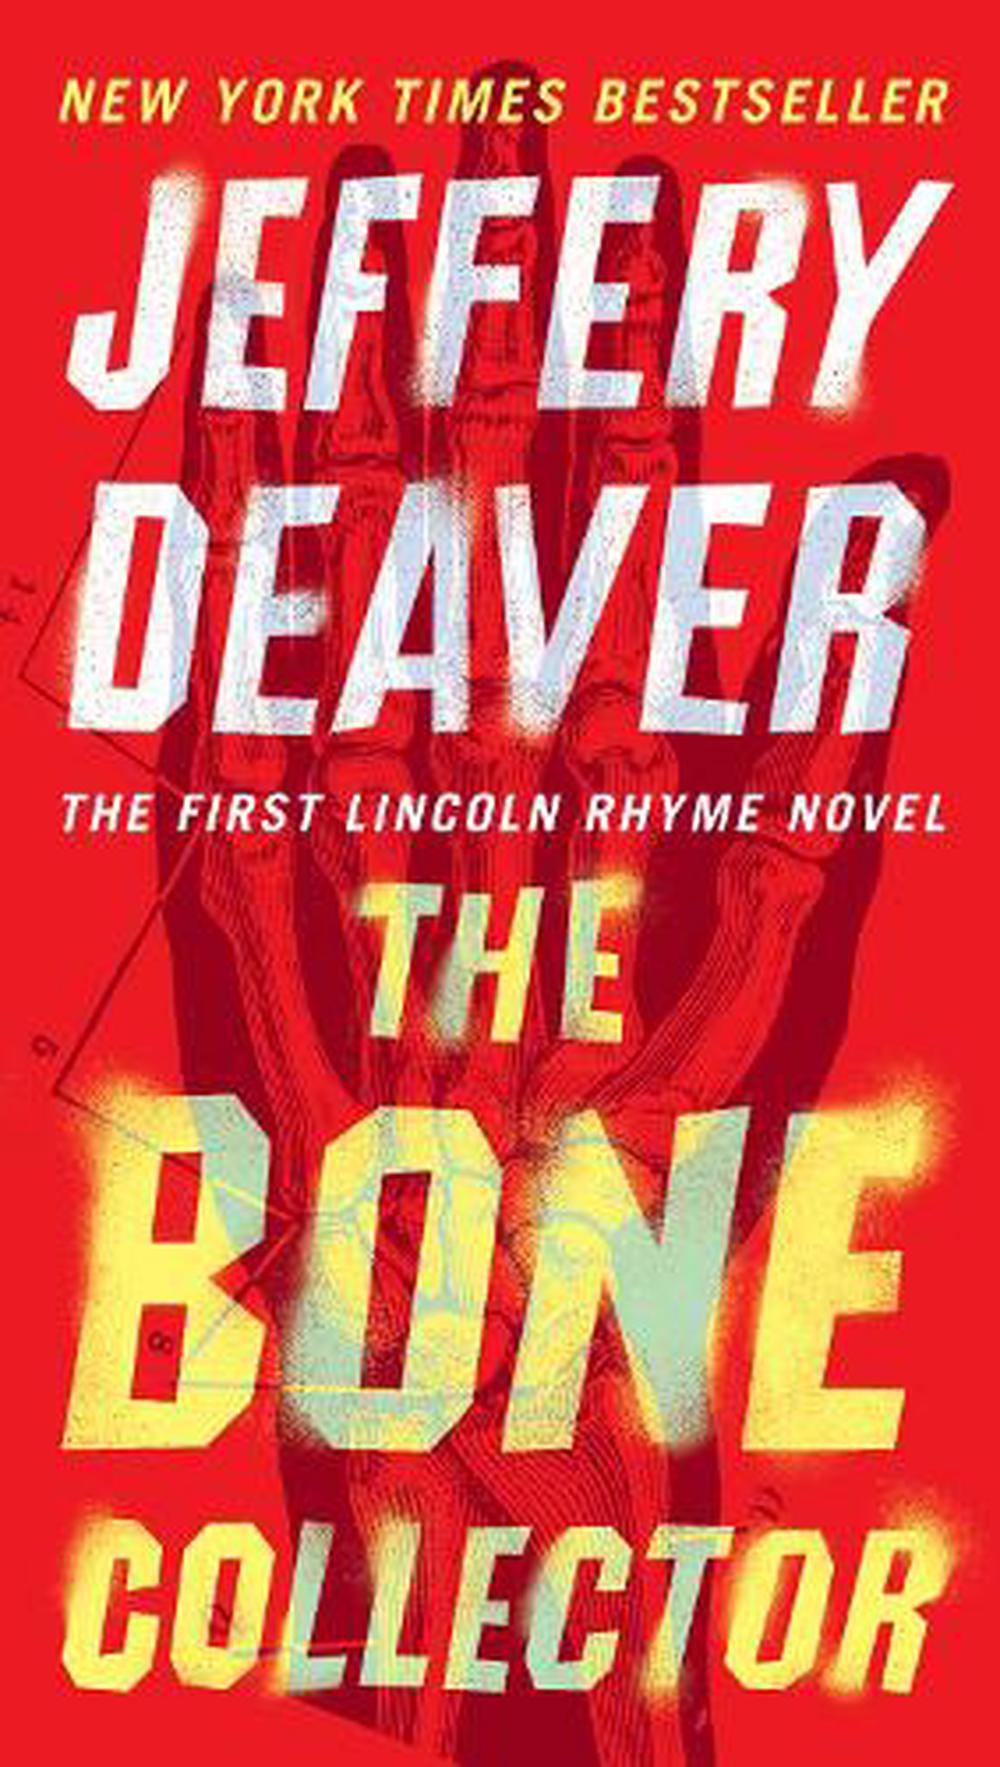 the bone collector novel